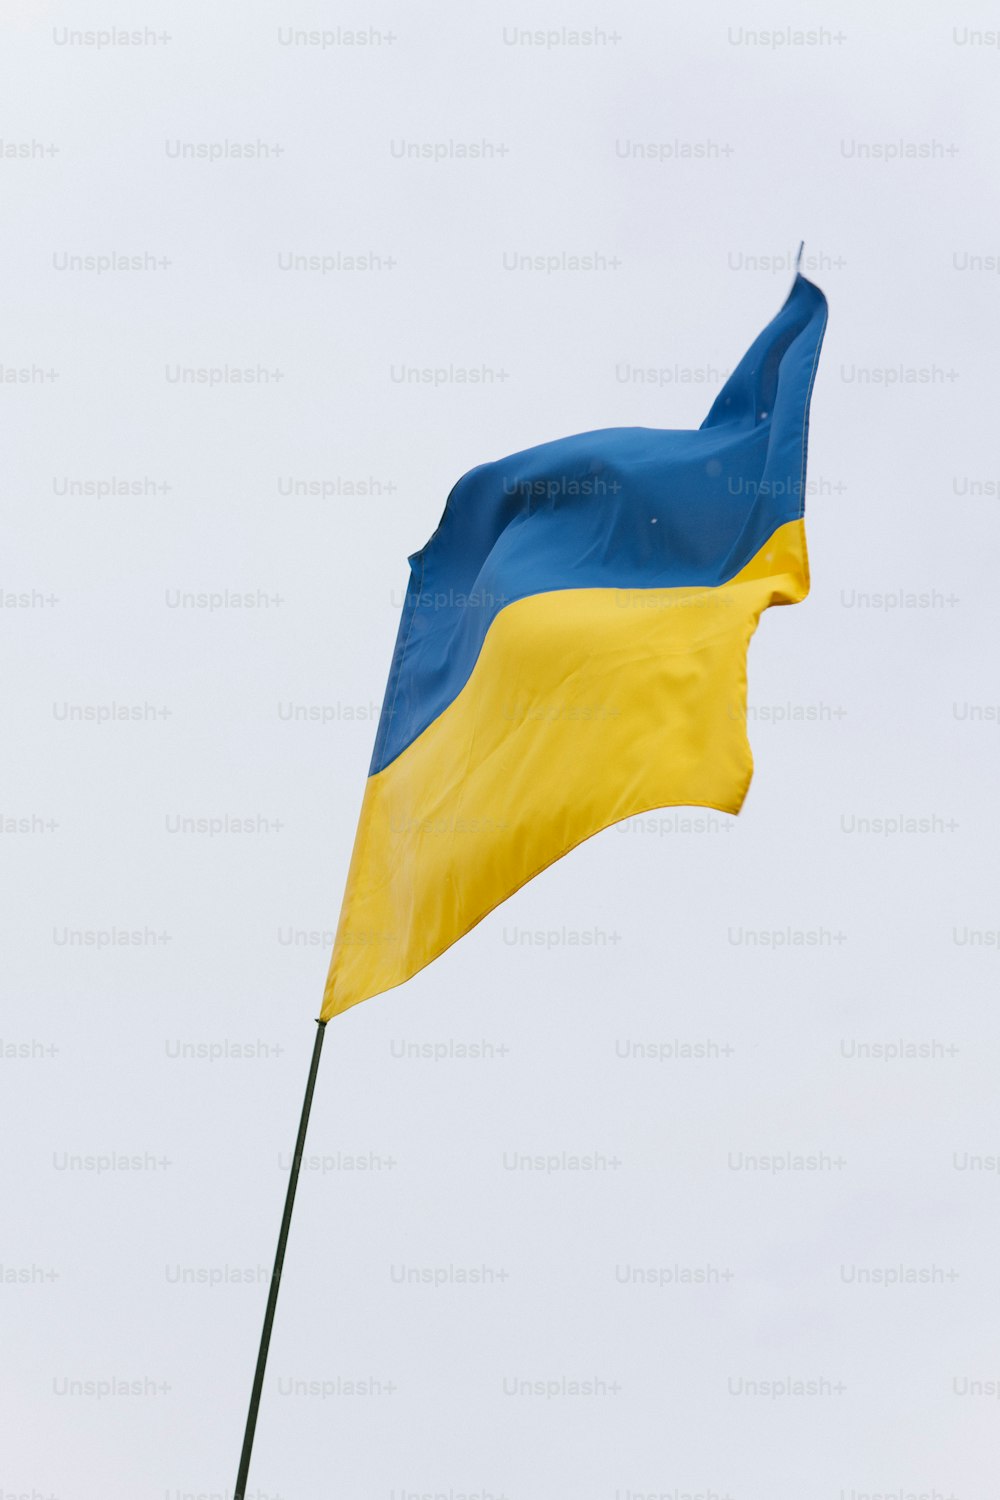 Un drapeau bleu et jaune flottant dans le ciel